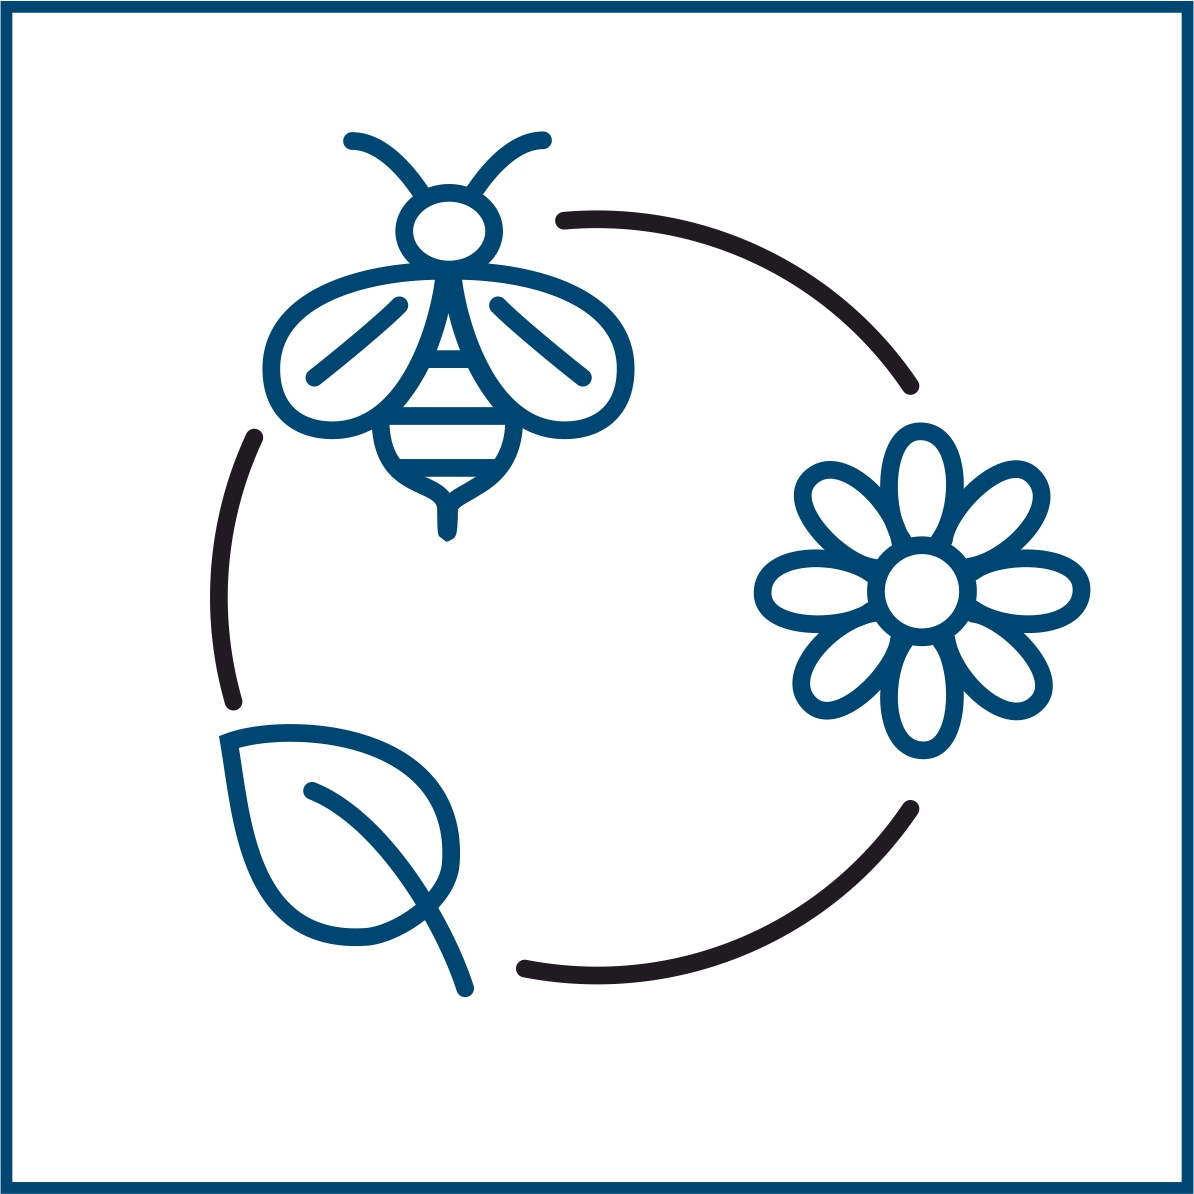 Piktogramm eines Kreises mit einer Biene, Blume und Blatt